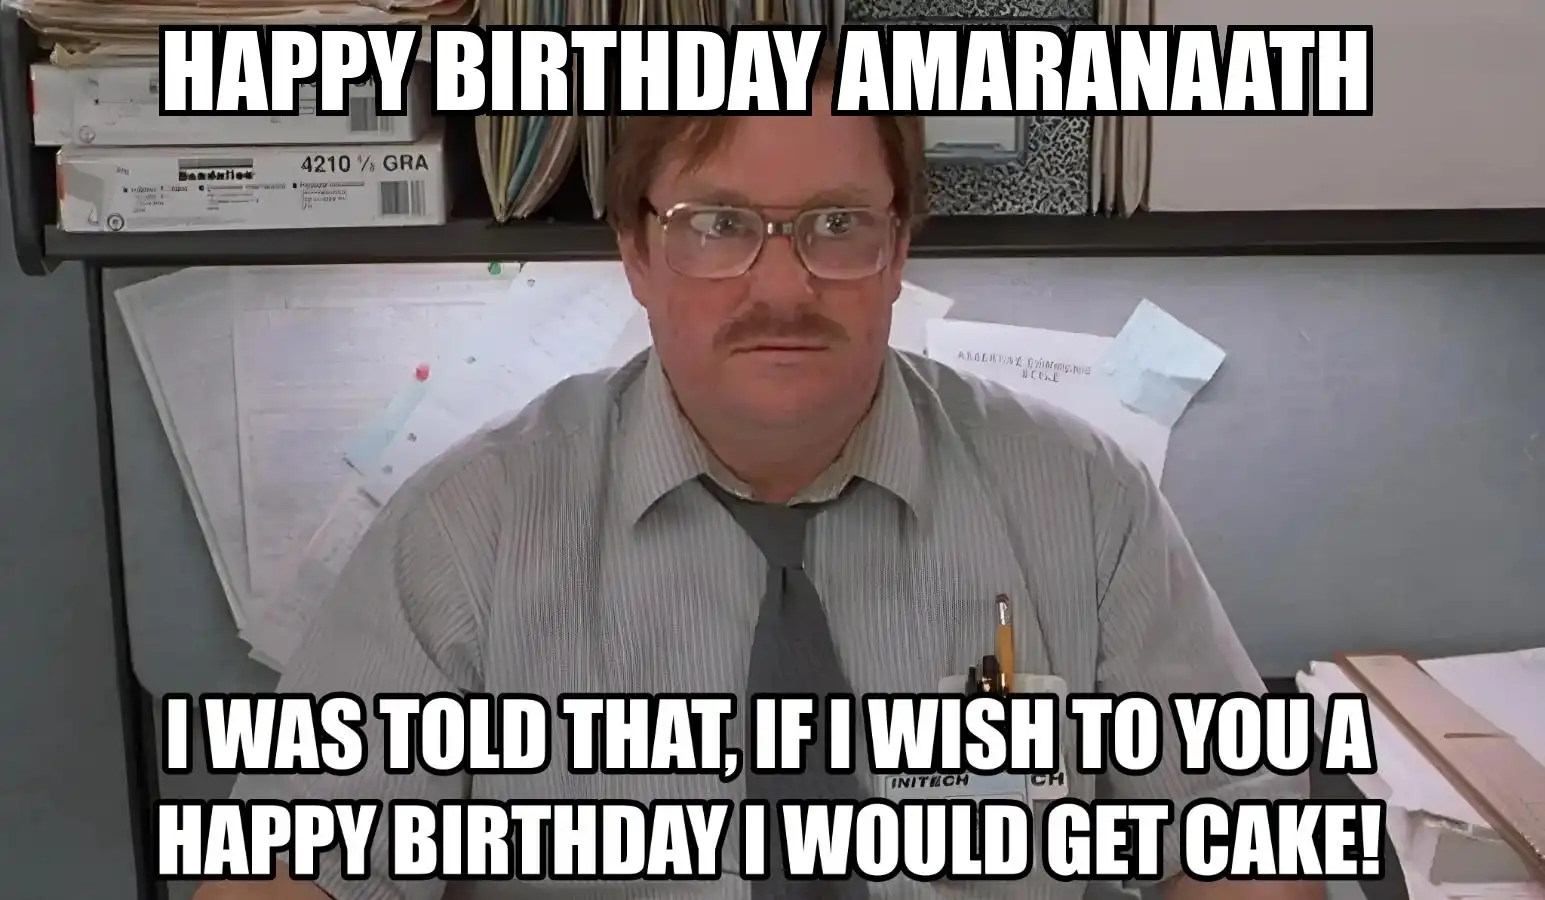 Happy Birthday Amaranaath I Would Get A Cake Meme